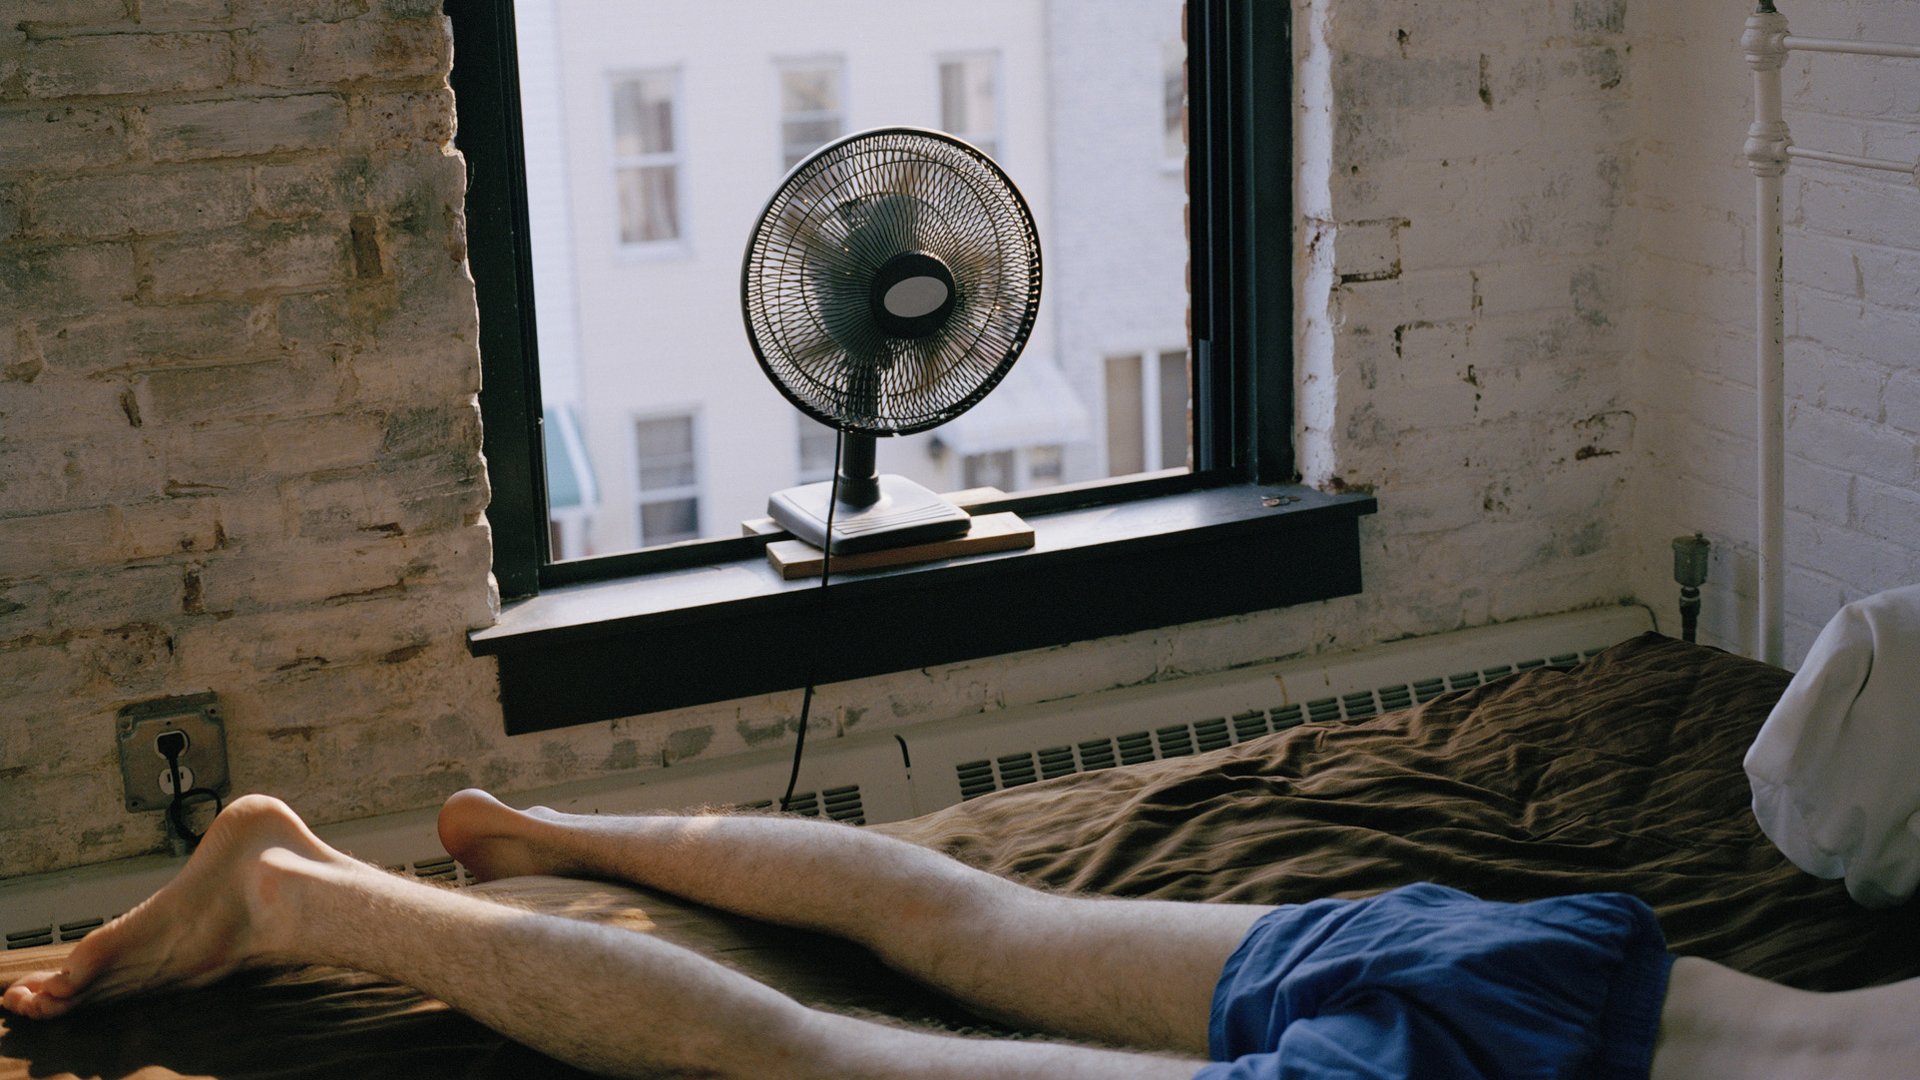 Ein Mann in blauen Shorts schläft auf seiner Bettdecke, während ein Ventilator Luft aus einem offenen Fenster bläst